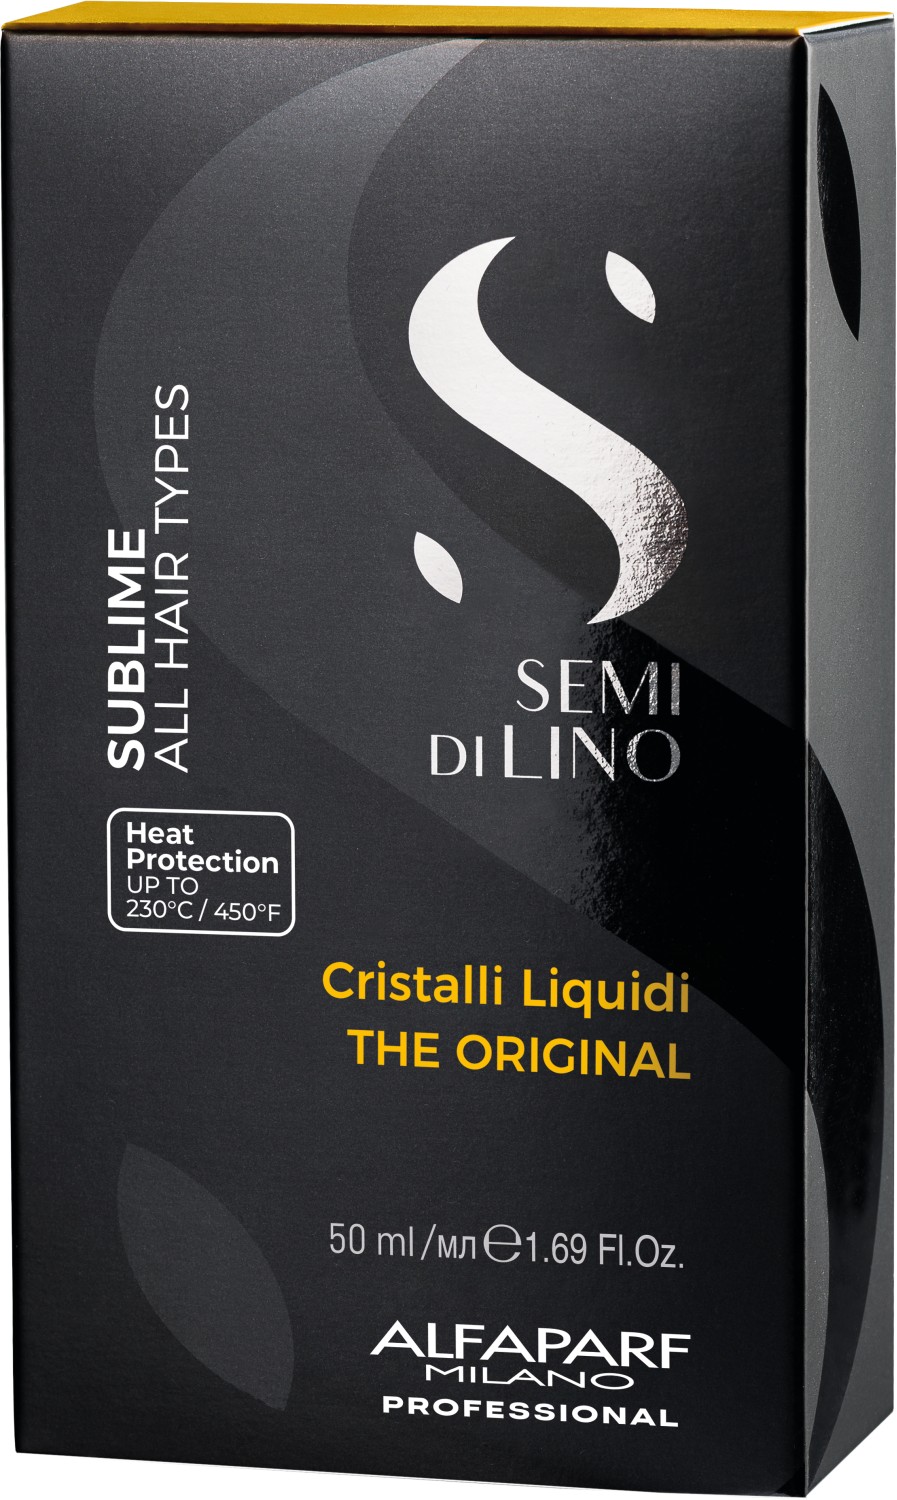  Alfaparf Milano Semi di Lino Sublime Cristalli Liquidi 50 ml 